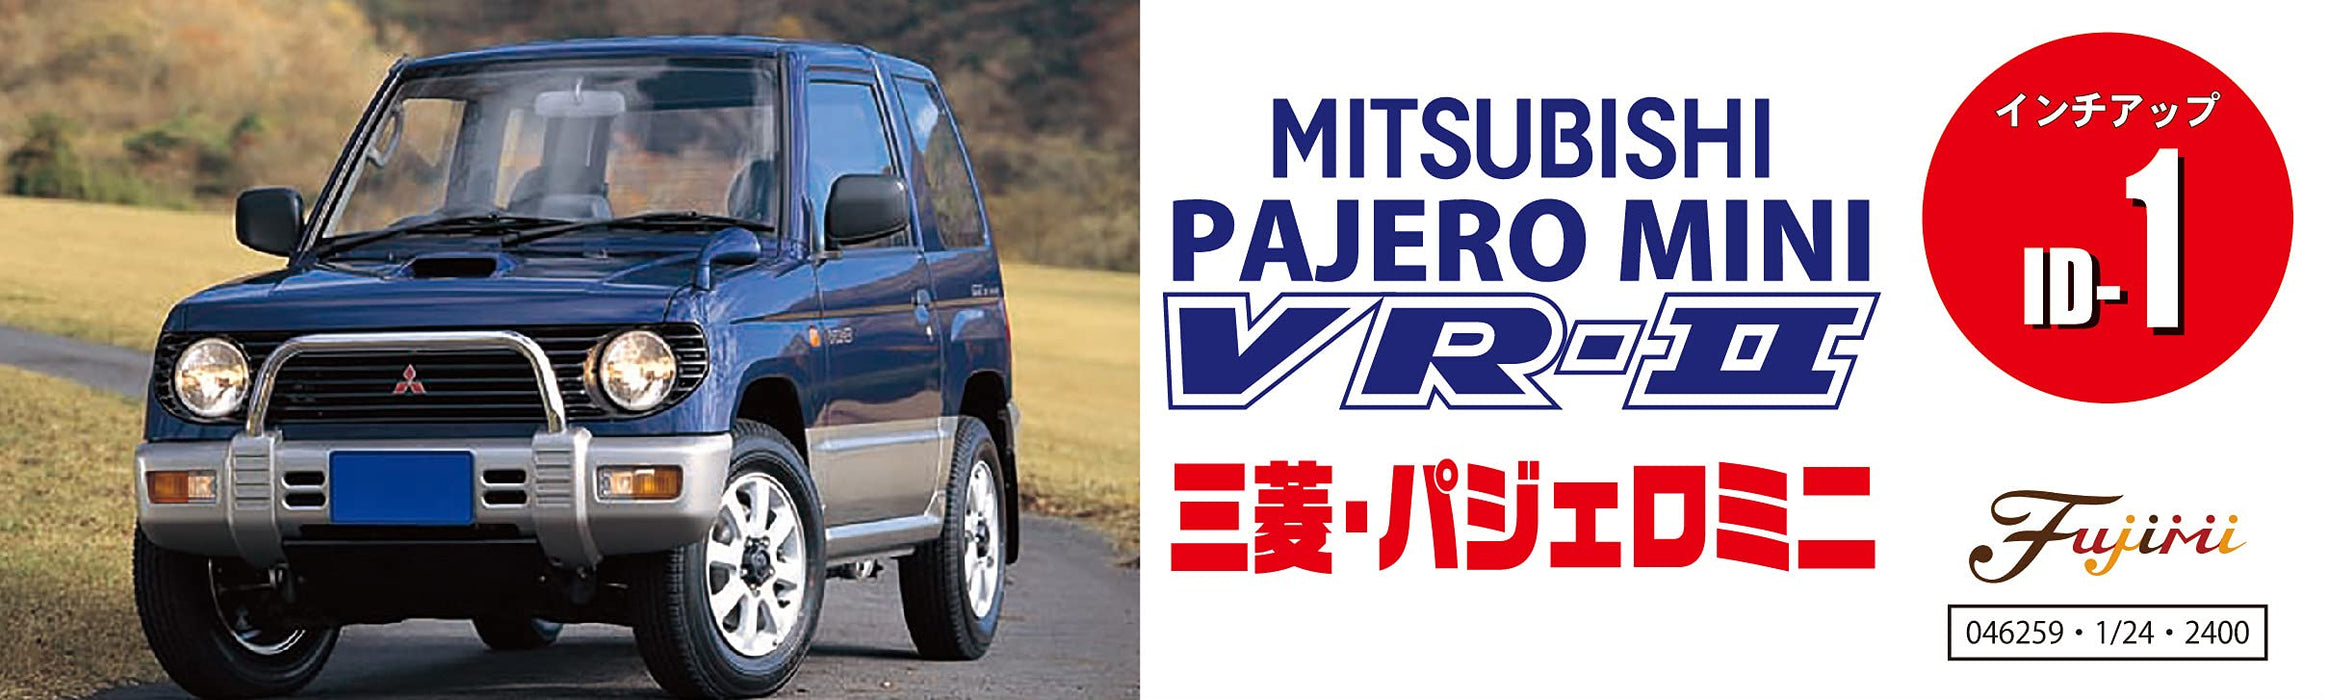 Fujimi Inch Up 1/24 Mitsubishi Pajero Mini Vr-II 1994 modèles de voitures en plastique japonais